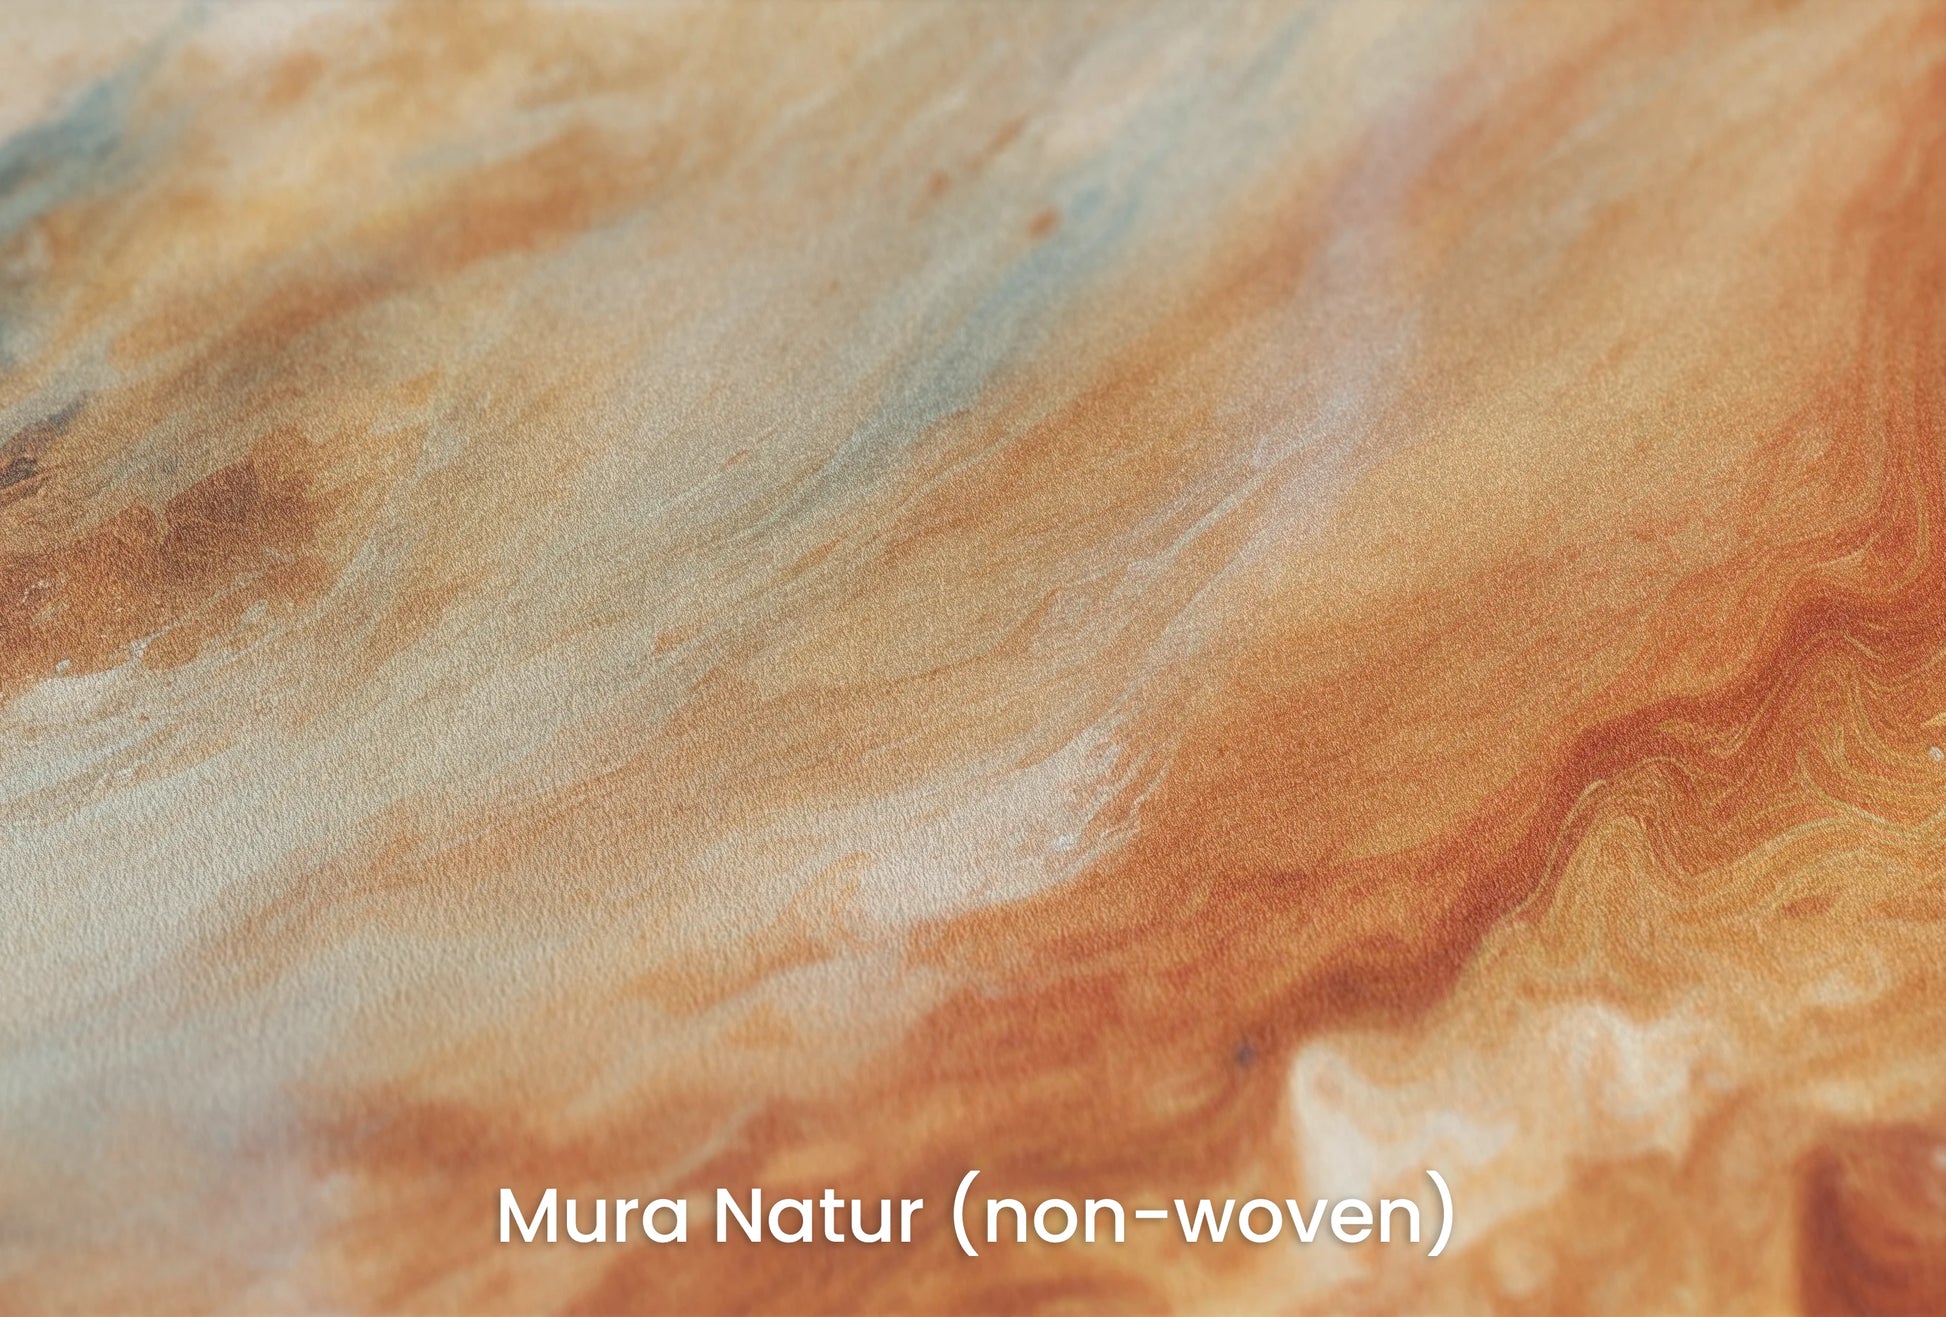 Zbliżenie na artystyczną fototapetę o nazwie Jupiter's Glow na podłożu Mura Natur (non-woven) - naturalne i ekologiczne podłoże.